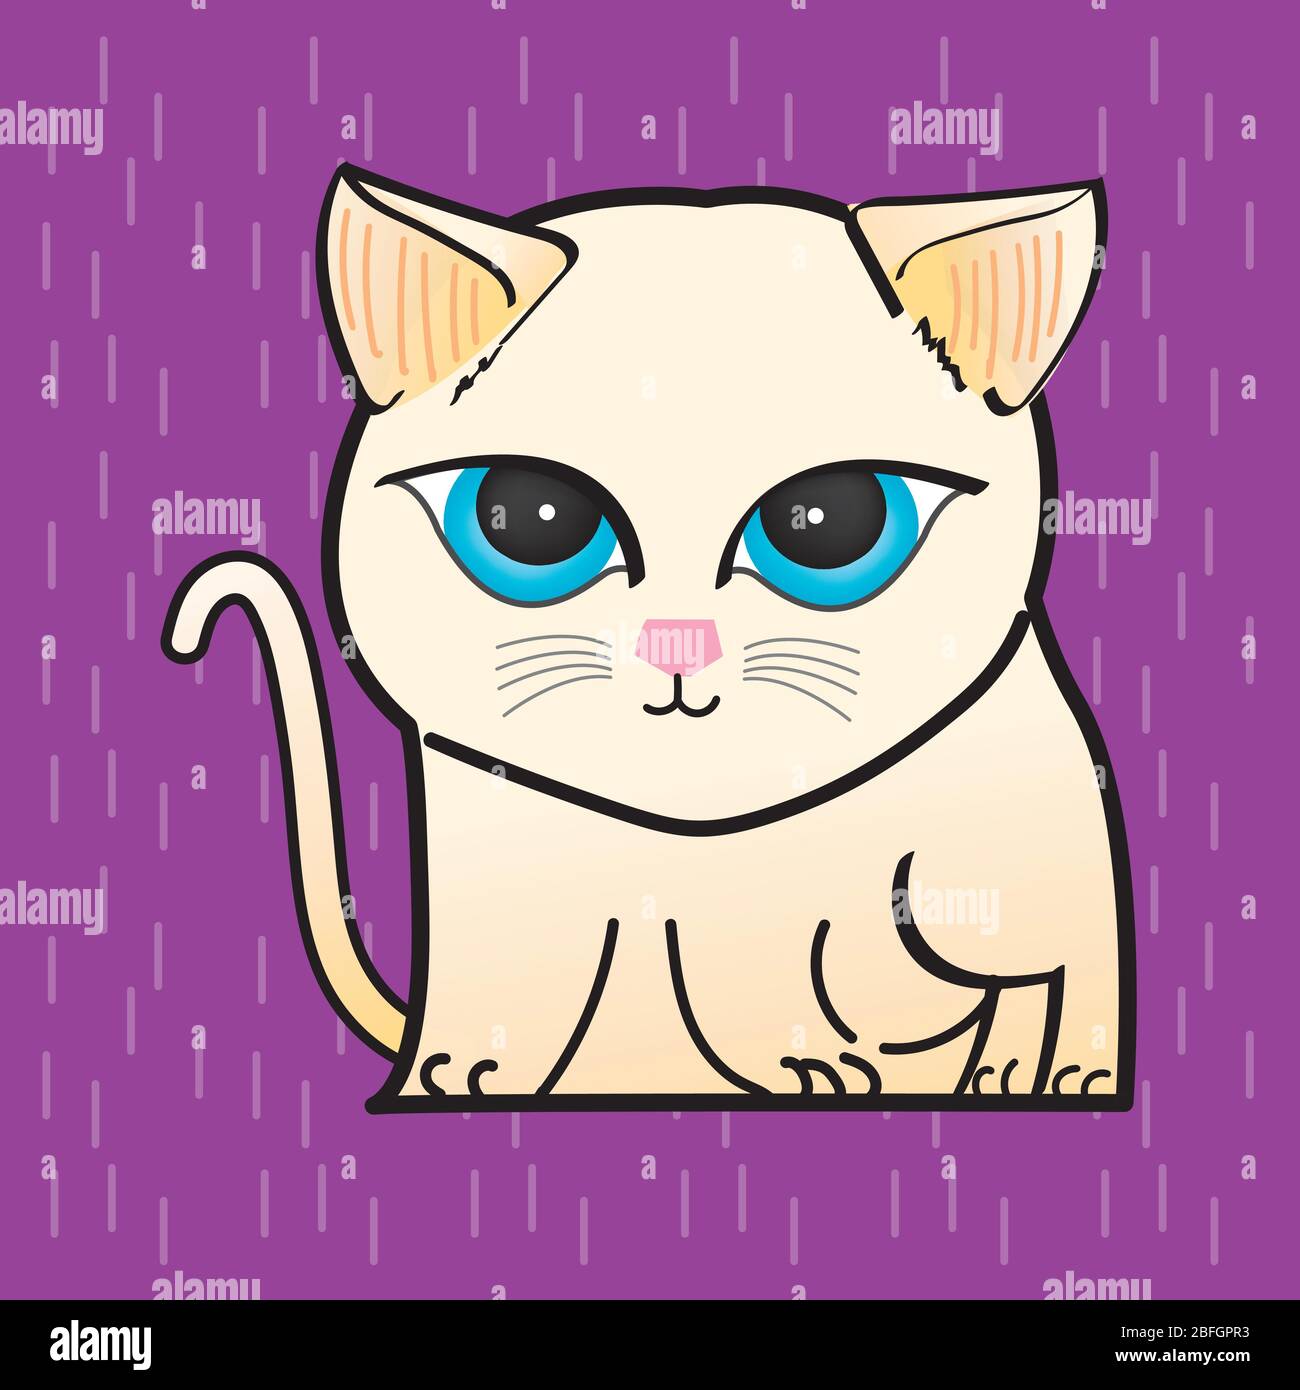 Clipart d'illustration Cat. Un chat de couleur claire a des yeux ronds bleus. Il est sur un fond violet. Dessin à la main art. Illustration de Vecteur